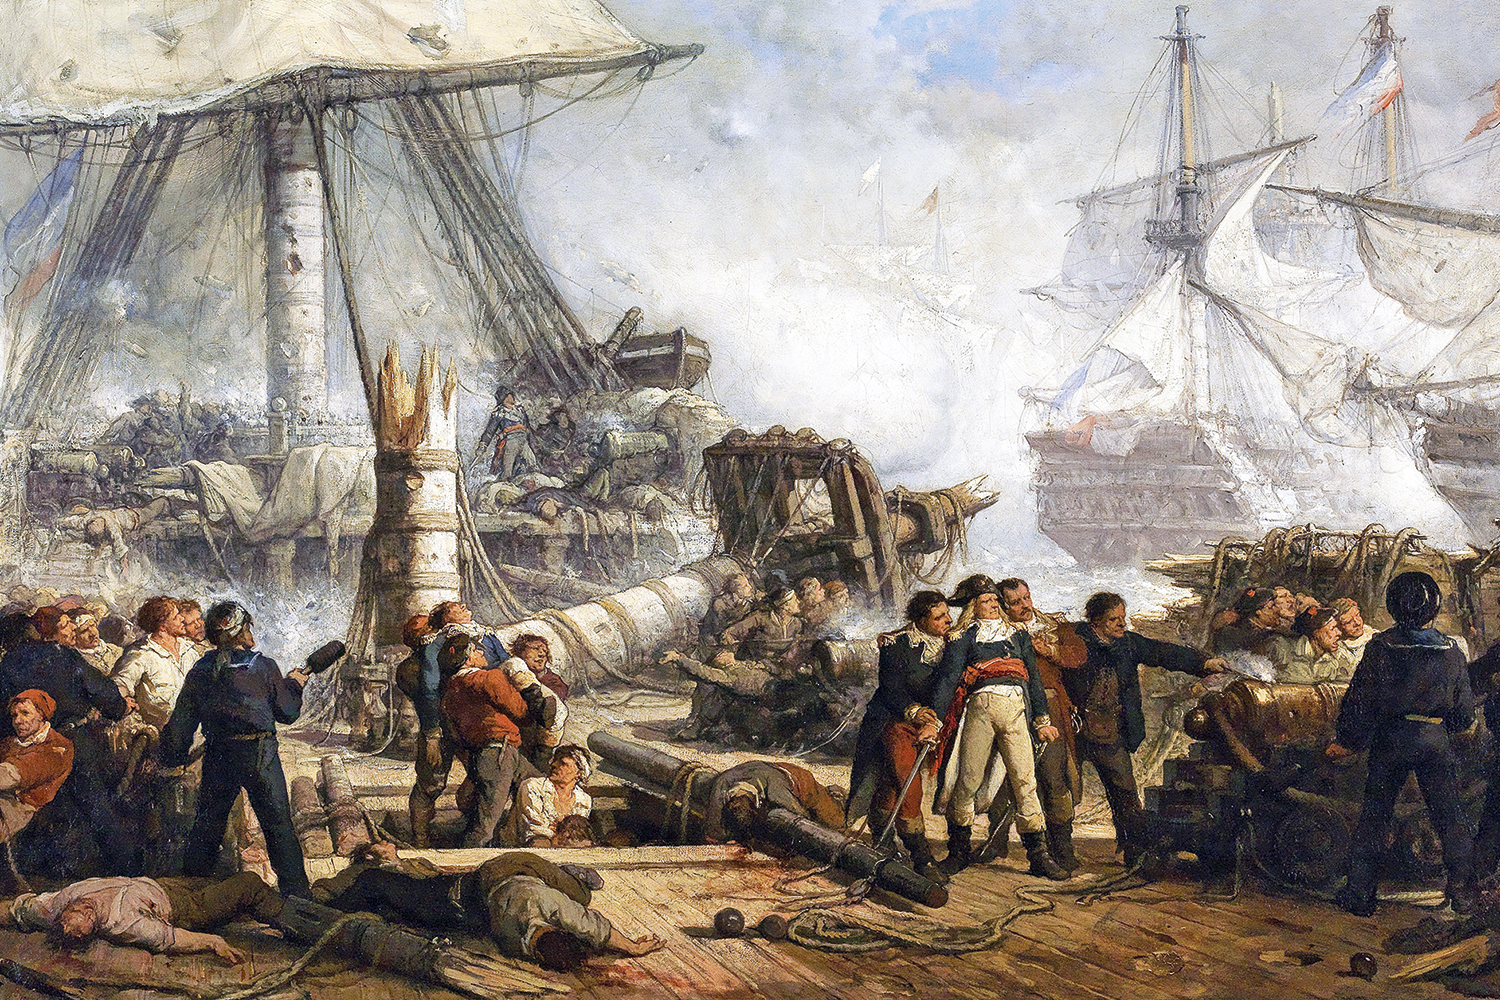 PODER - A Batalha de Trafalgar, em 1805: depois de derrotar a França, a Inglaterra conquistou a supremacia marítima global -